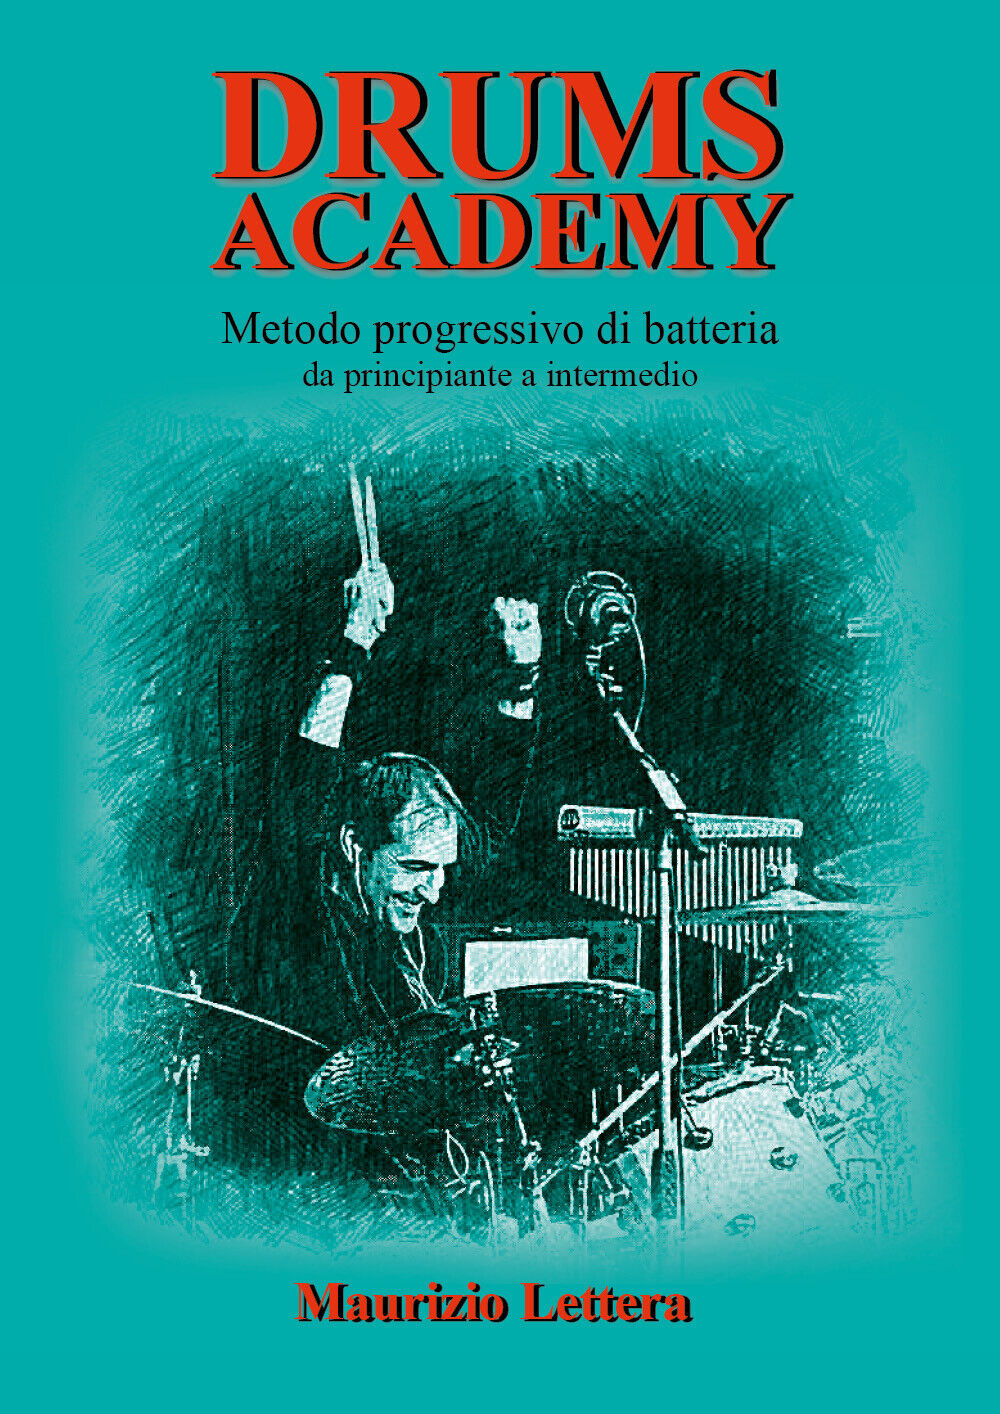 Drums Academy. Metodo progressivo di batteria - Da principiante a intermedio di 